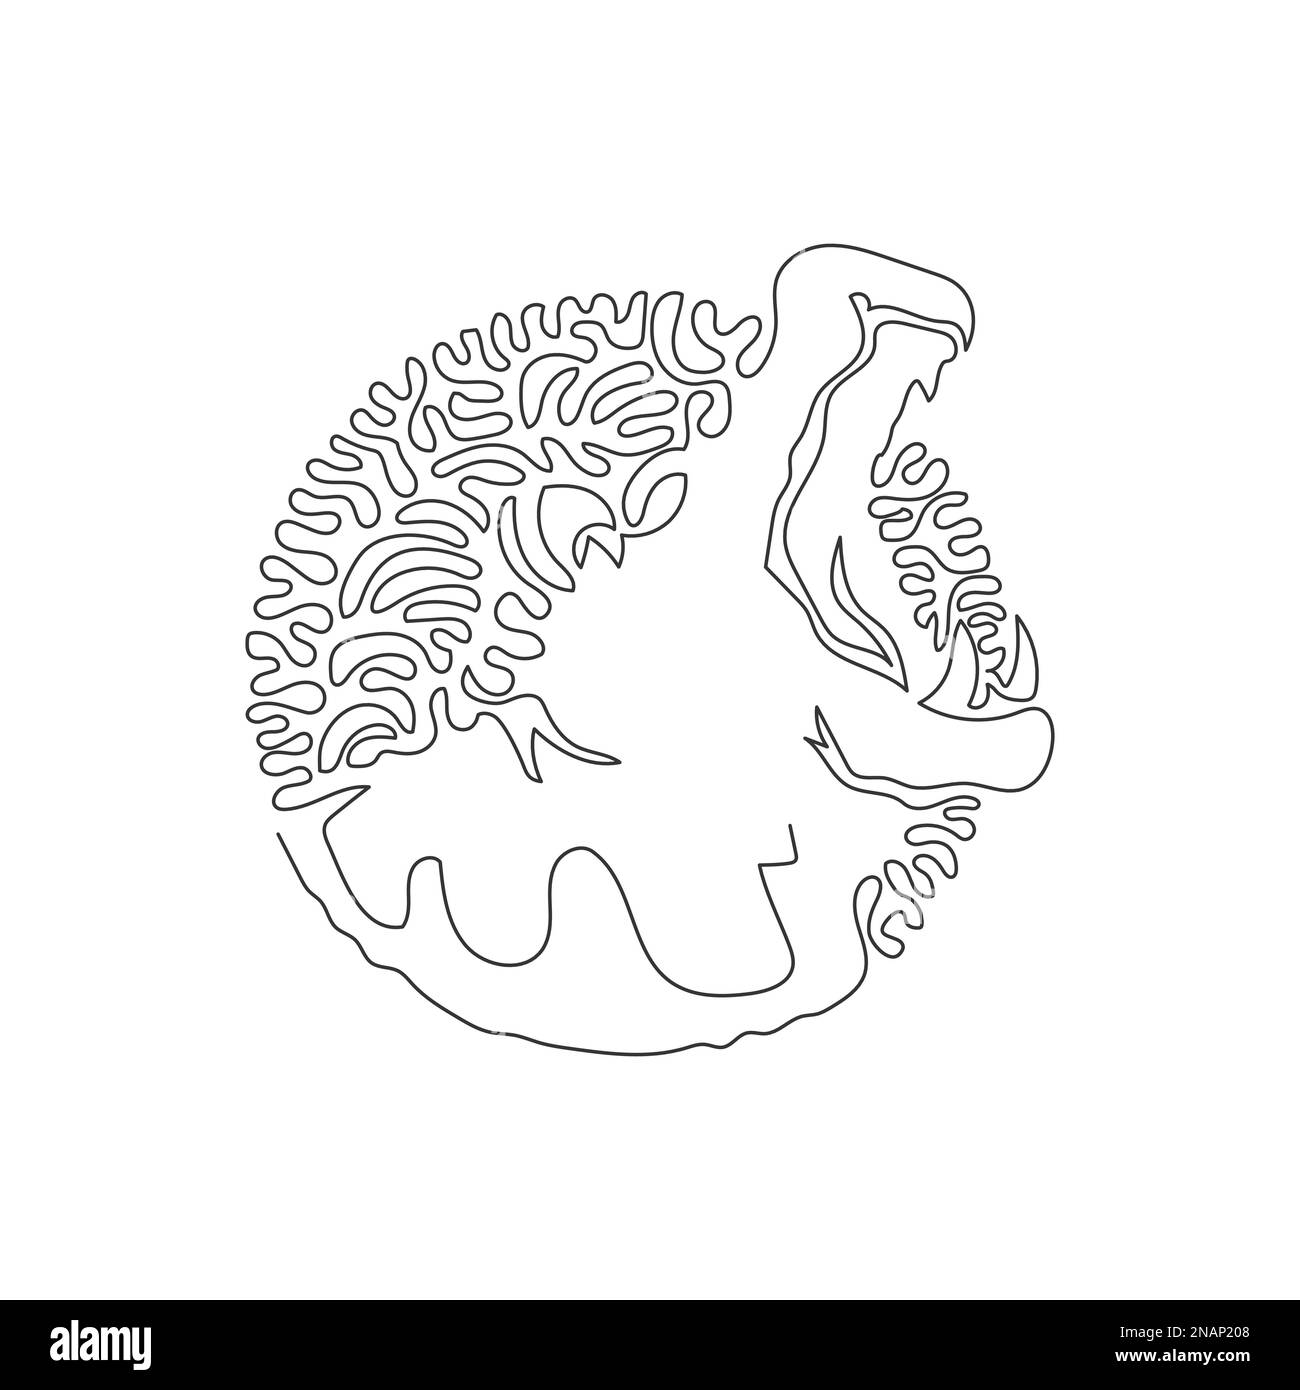 Eine einzelne geschwungene, einzeilige Zeichnung einer gruseligen abstrakten Kunst des Nilpferdes. Durchgehende Linie Zeichnen eines grafischen Entwurfsvektors Darstellung eines großen Hundes Nilpferds Stock Vektor